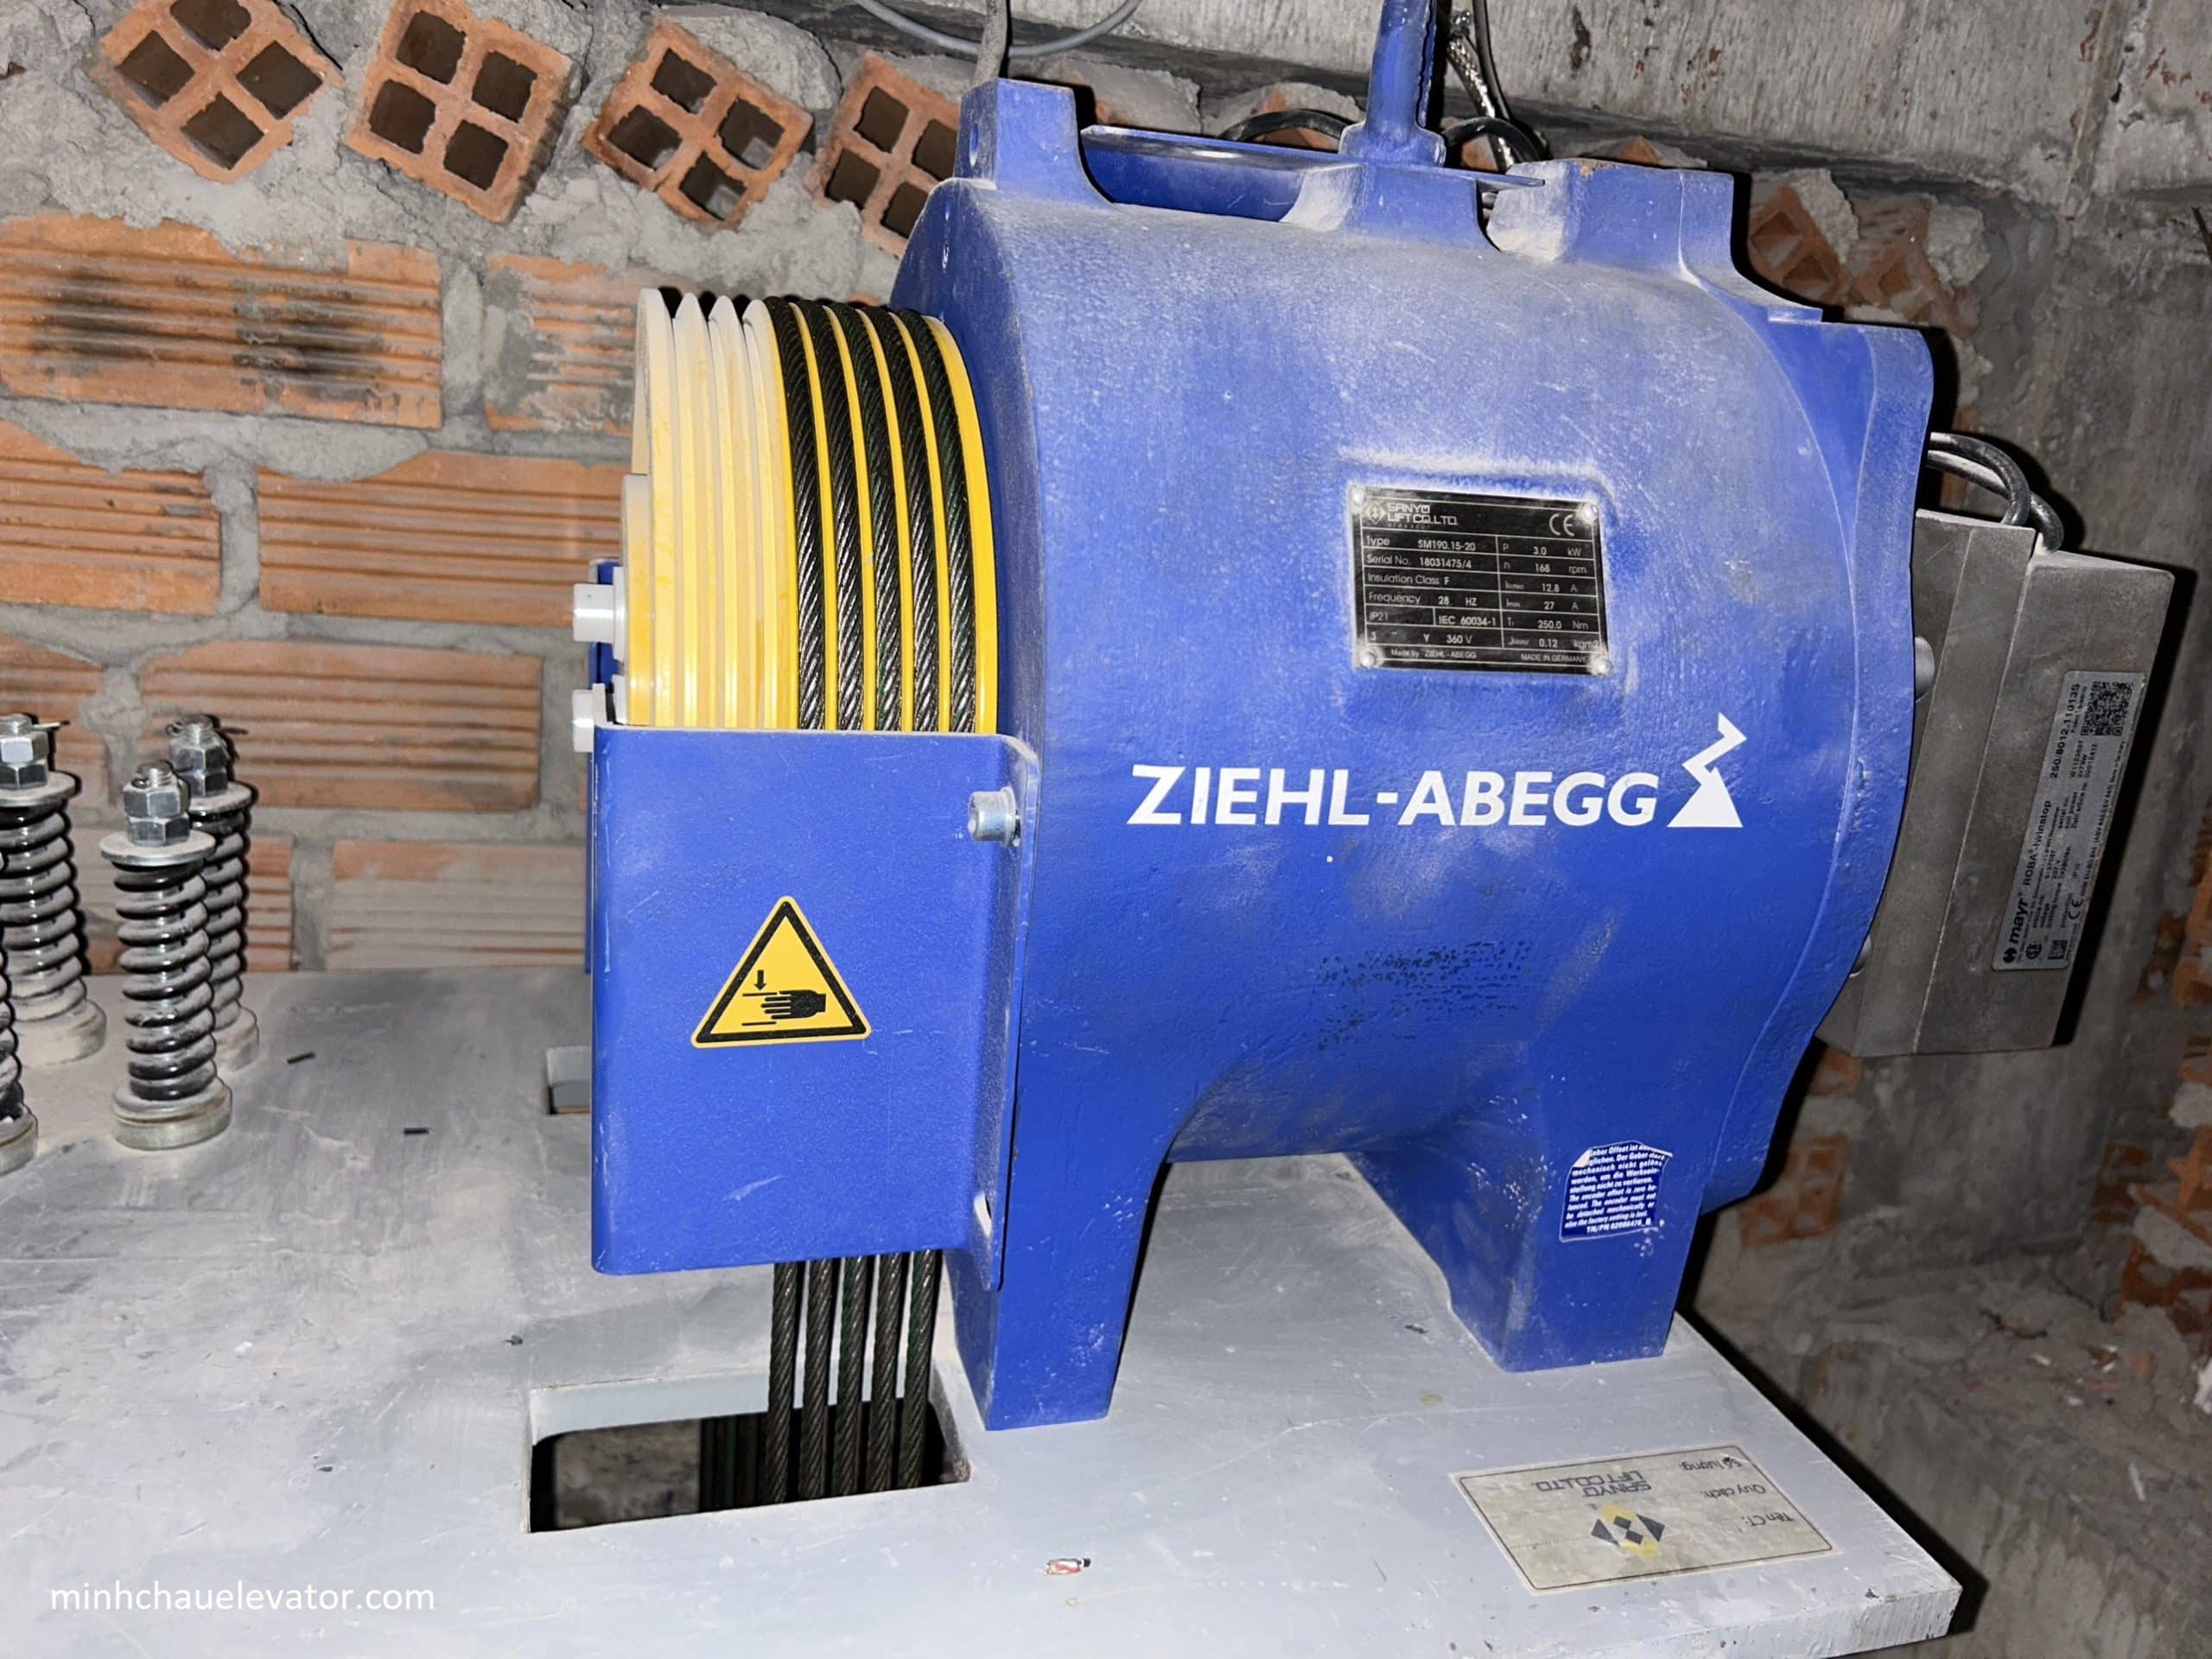  Máy kéo thang máy ZIEHL-ABEGG xuất xứ từ Đức.